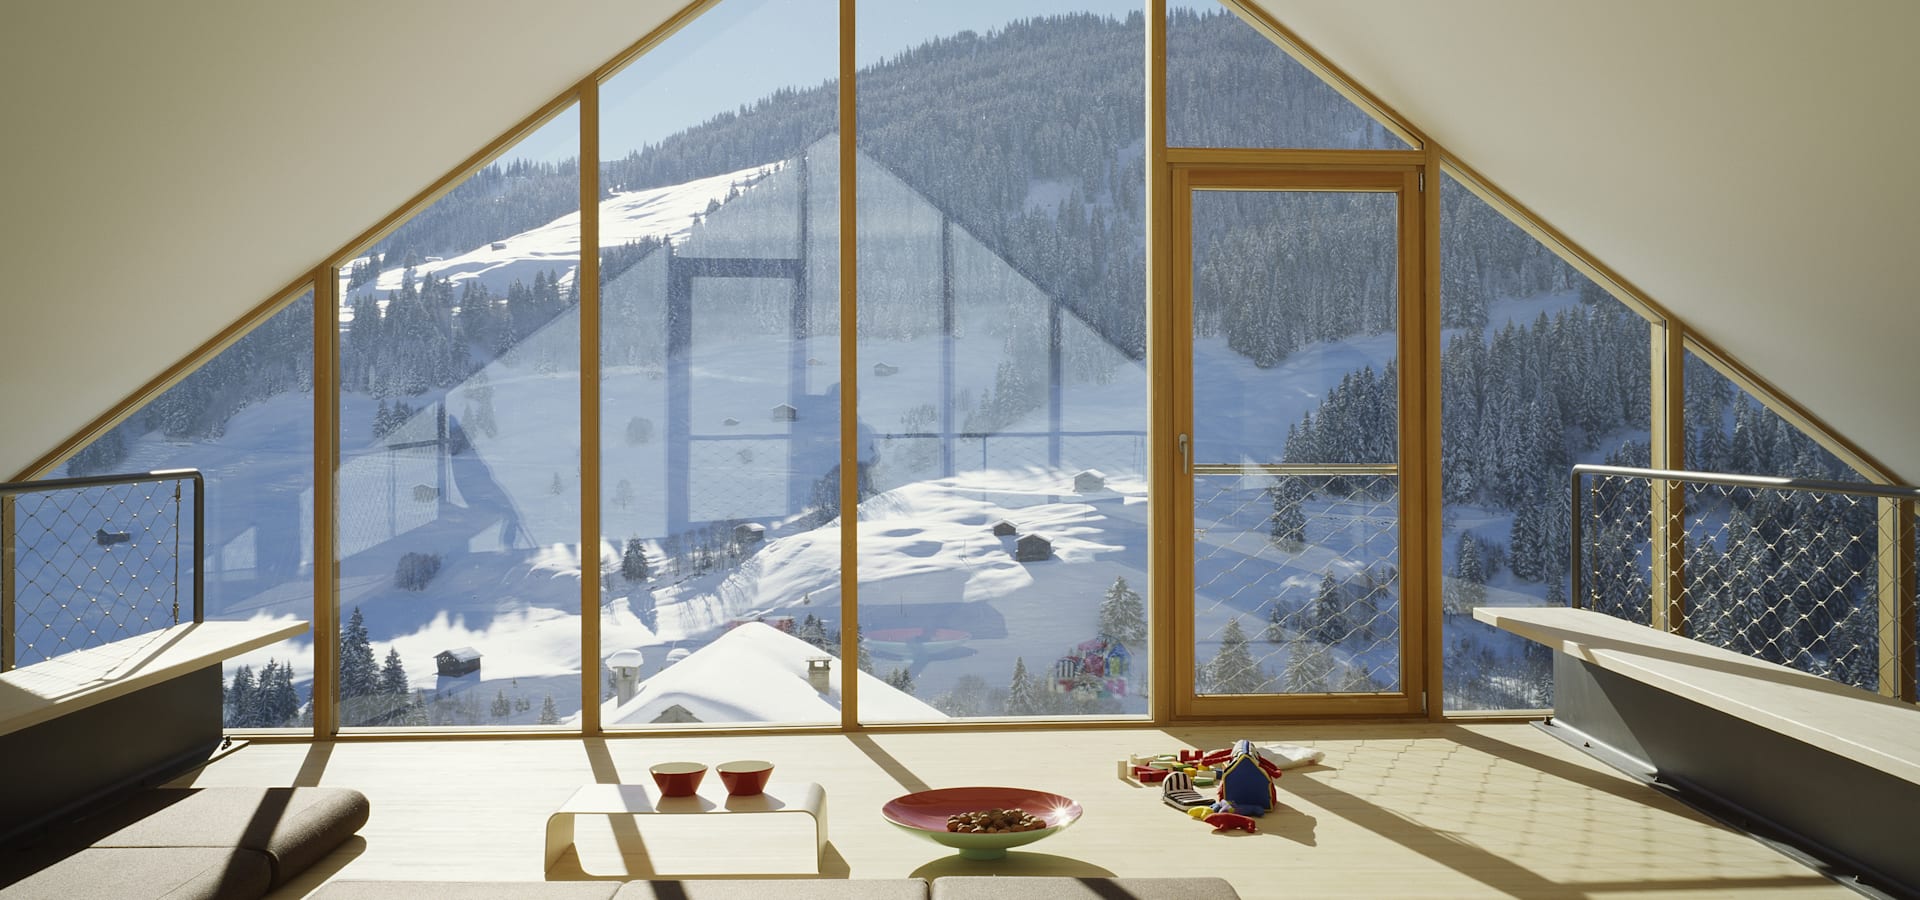 Как определить, стоит ли переводить окна в зимний режим?